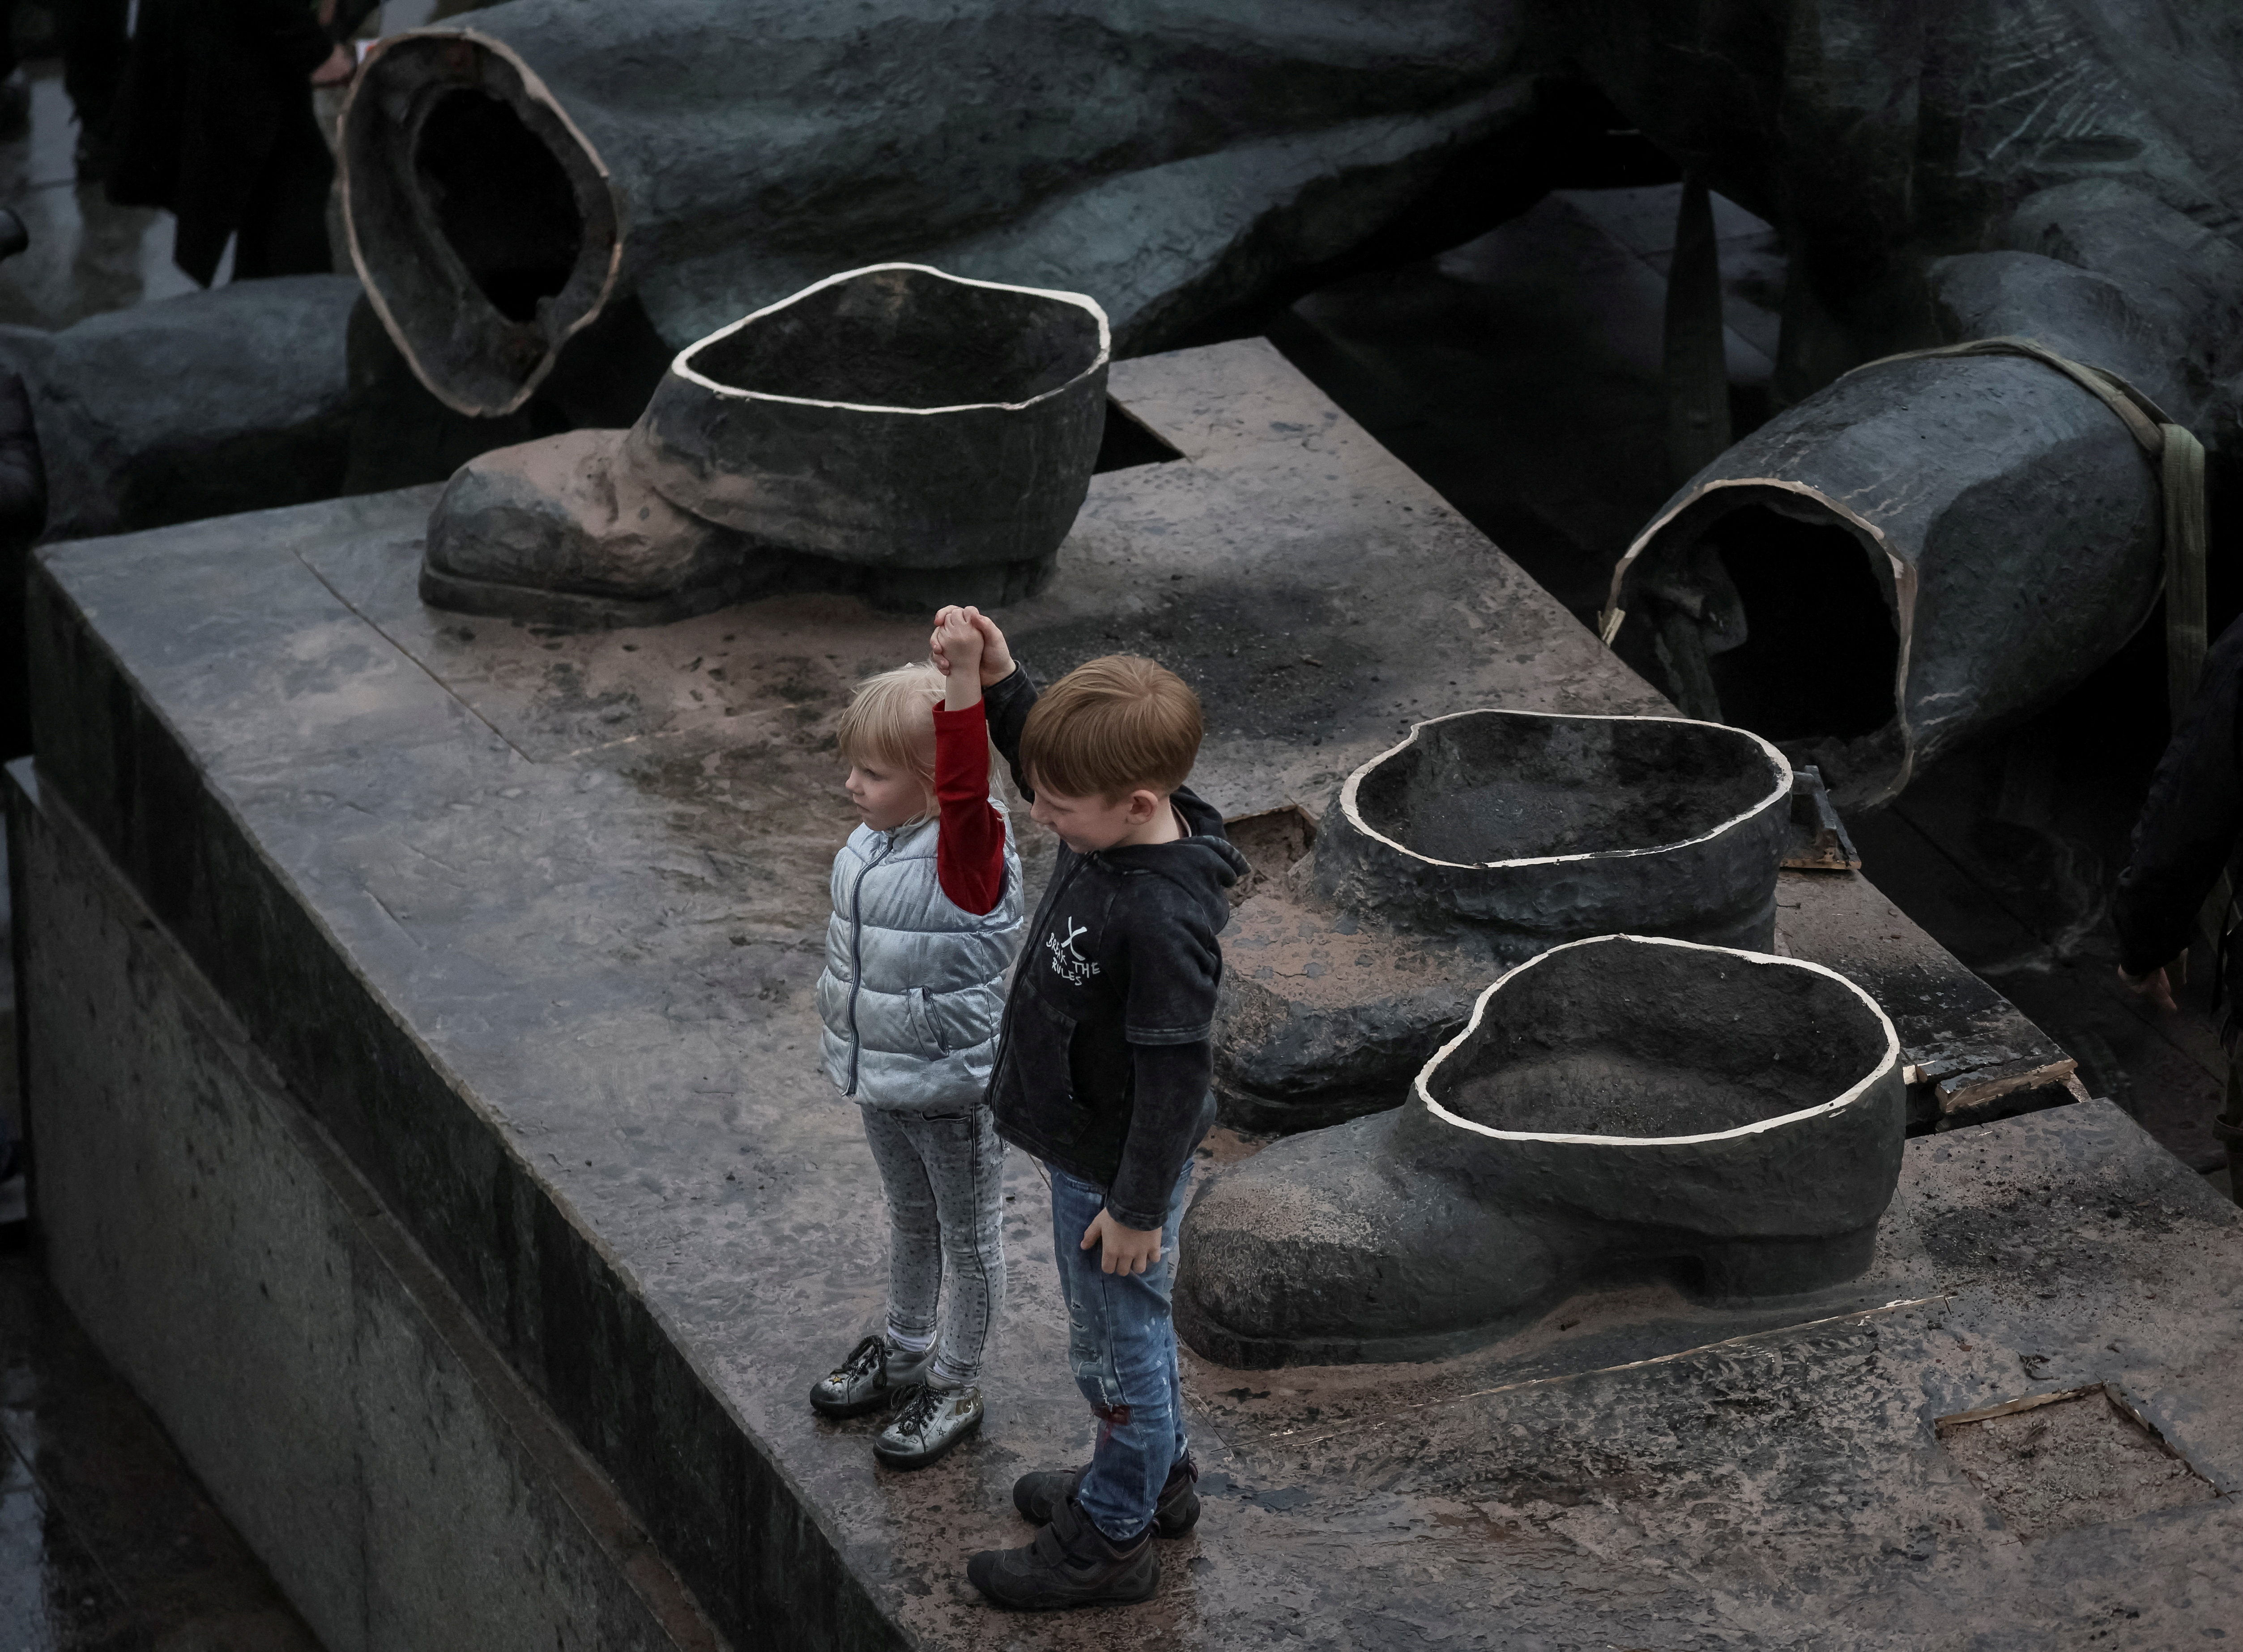 کودکان بنای یادبود اتحاد جماهیر شوروی را به دوستی بین کشورهای اوکراین و روسیه پس از تخریب آن در مرکز کیف به تصویر می کشند